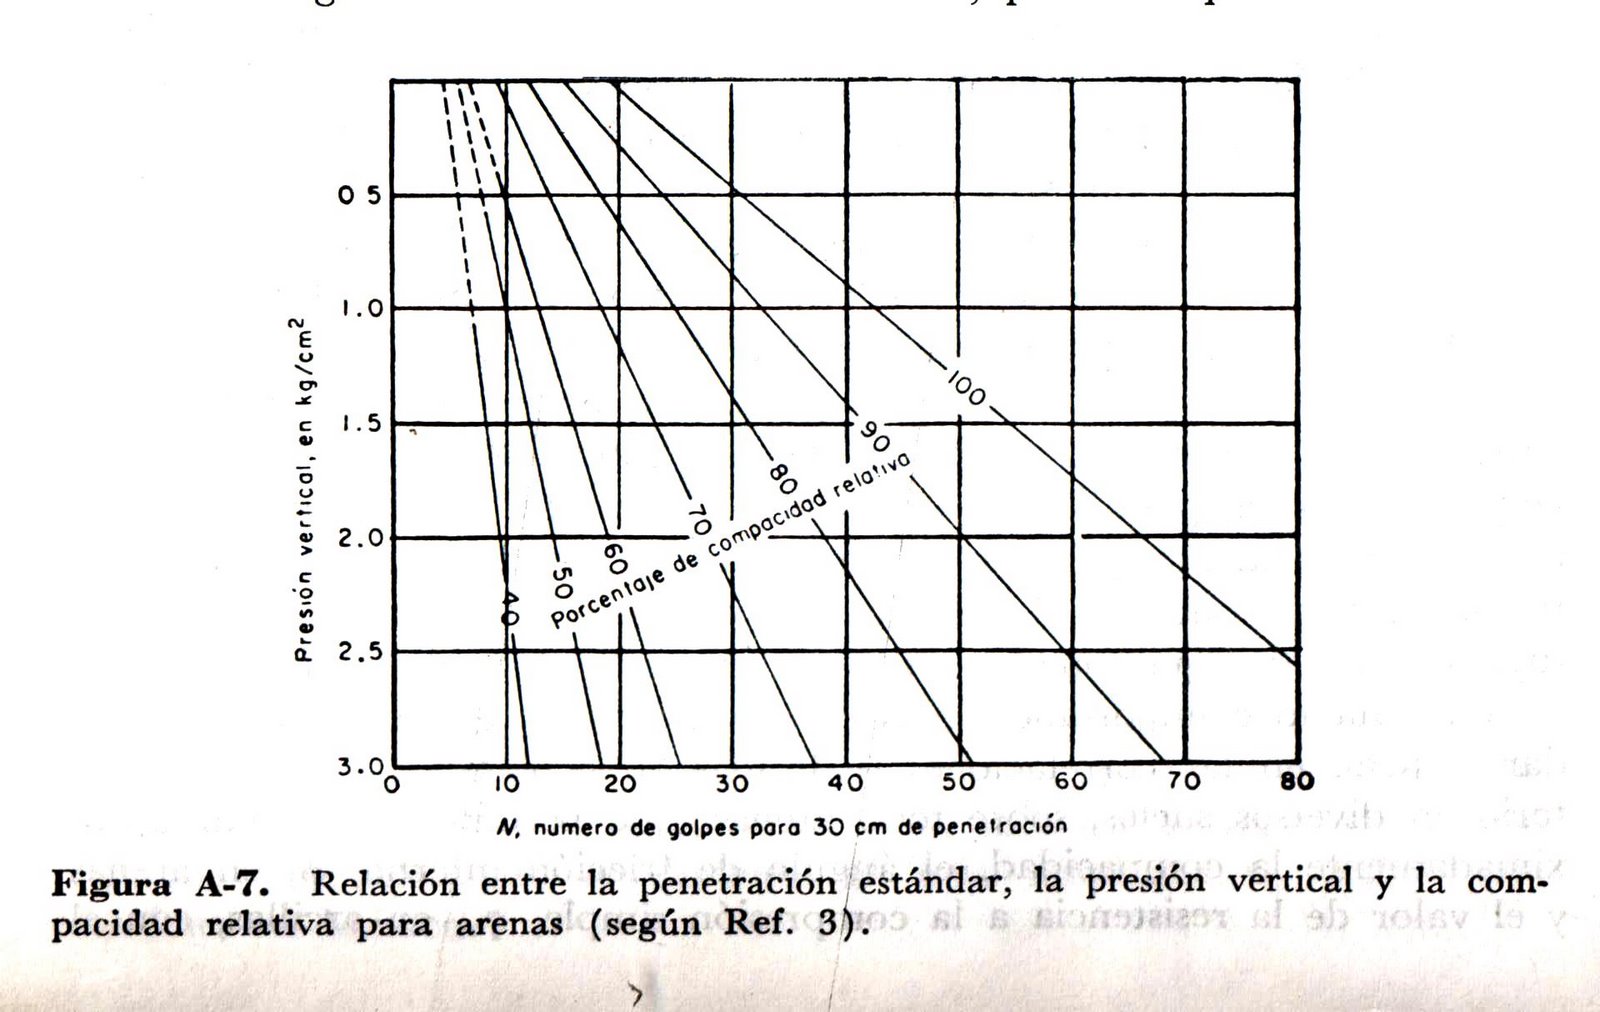 [PenetraciÃ³n+EstÃ¡ndar+vs+PresiÃ³n+vertical.jpg]